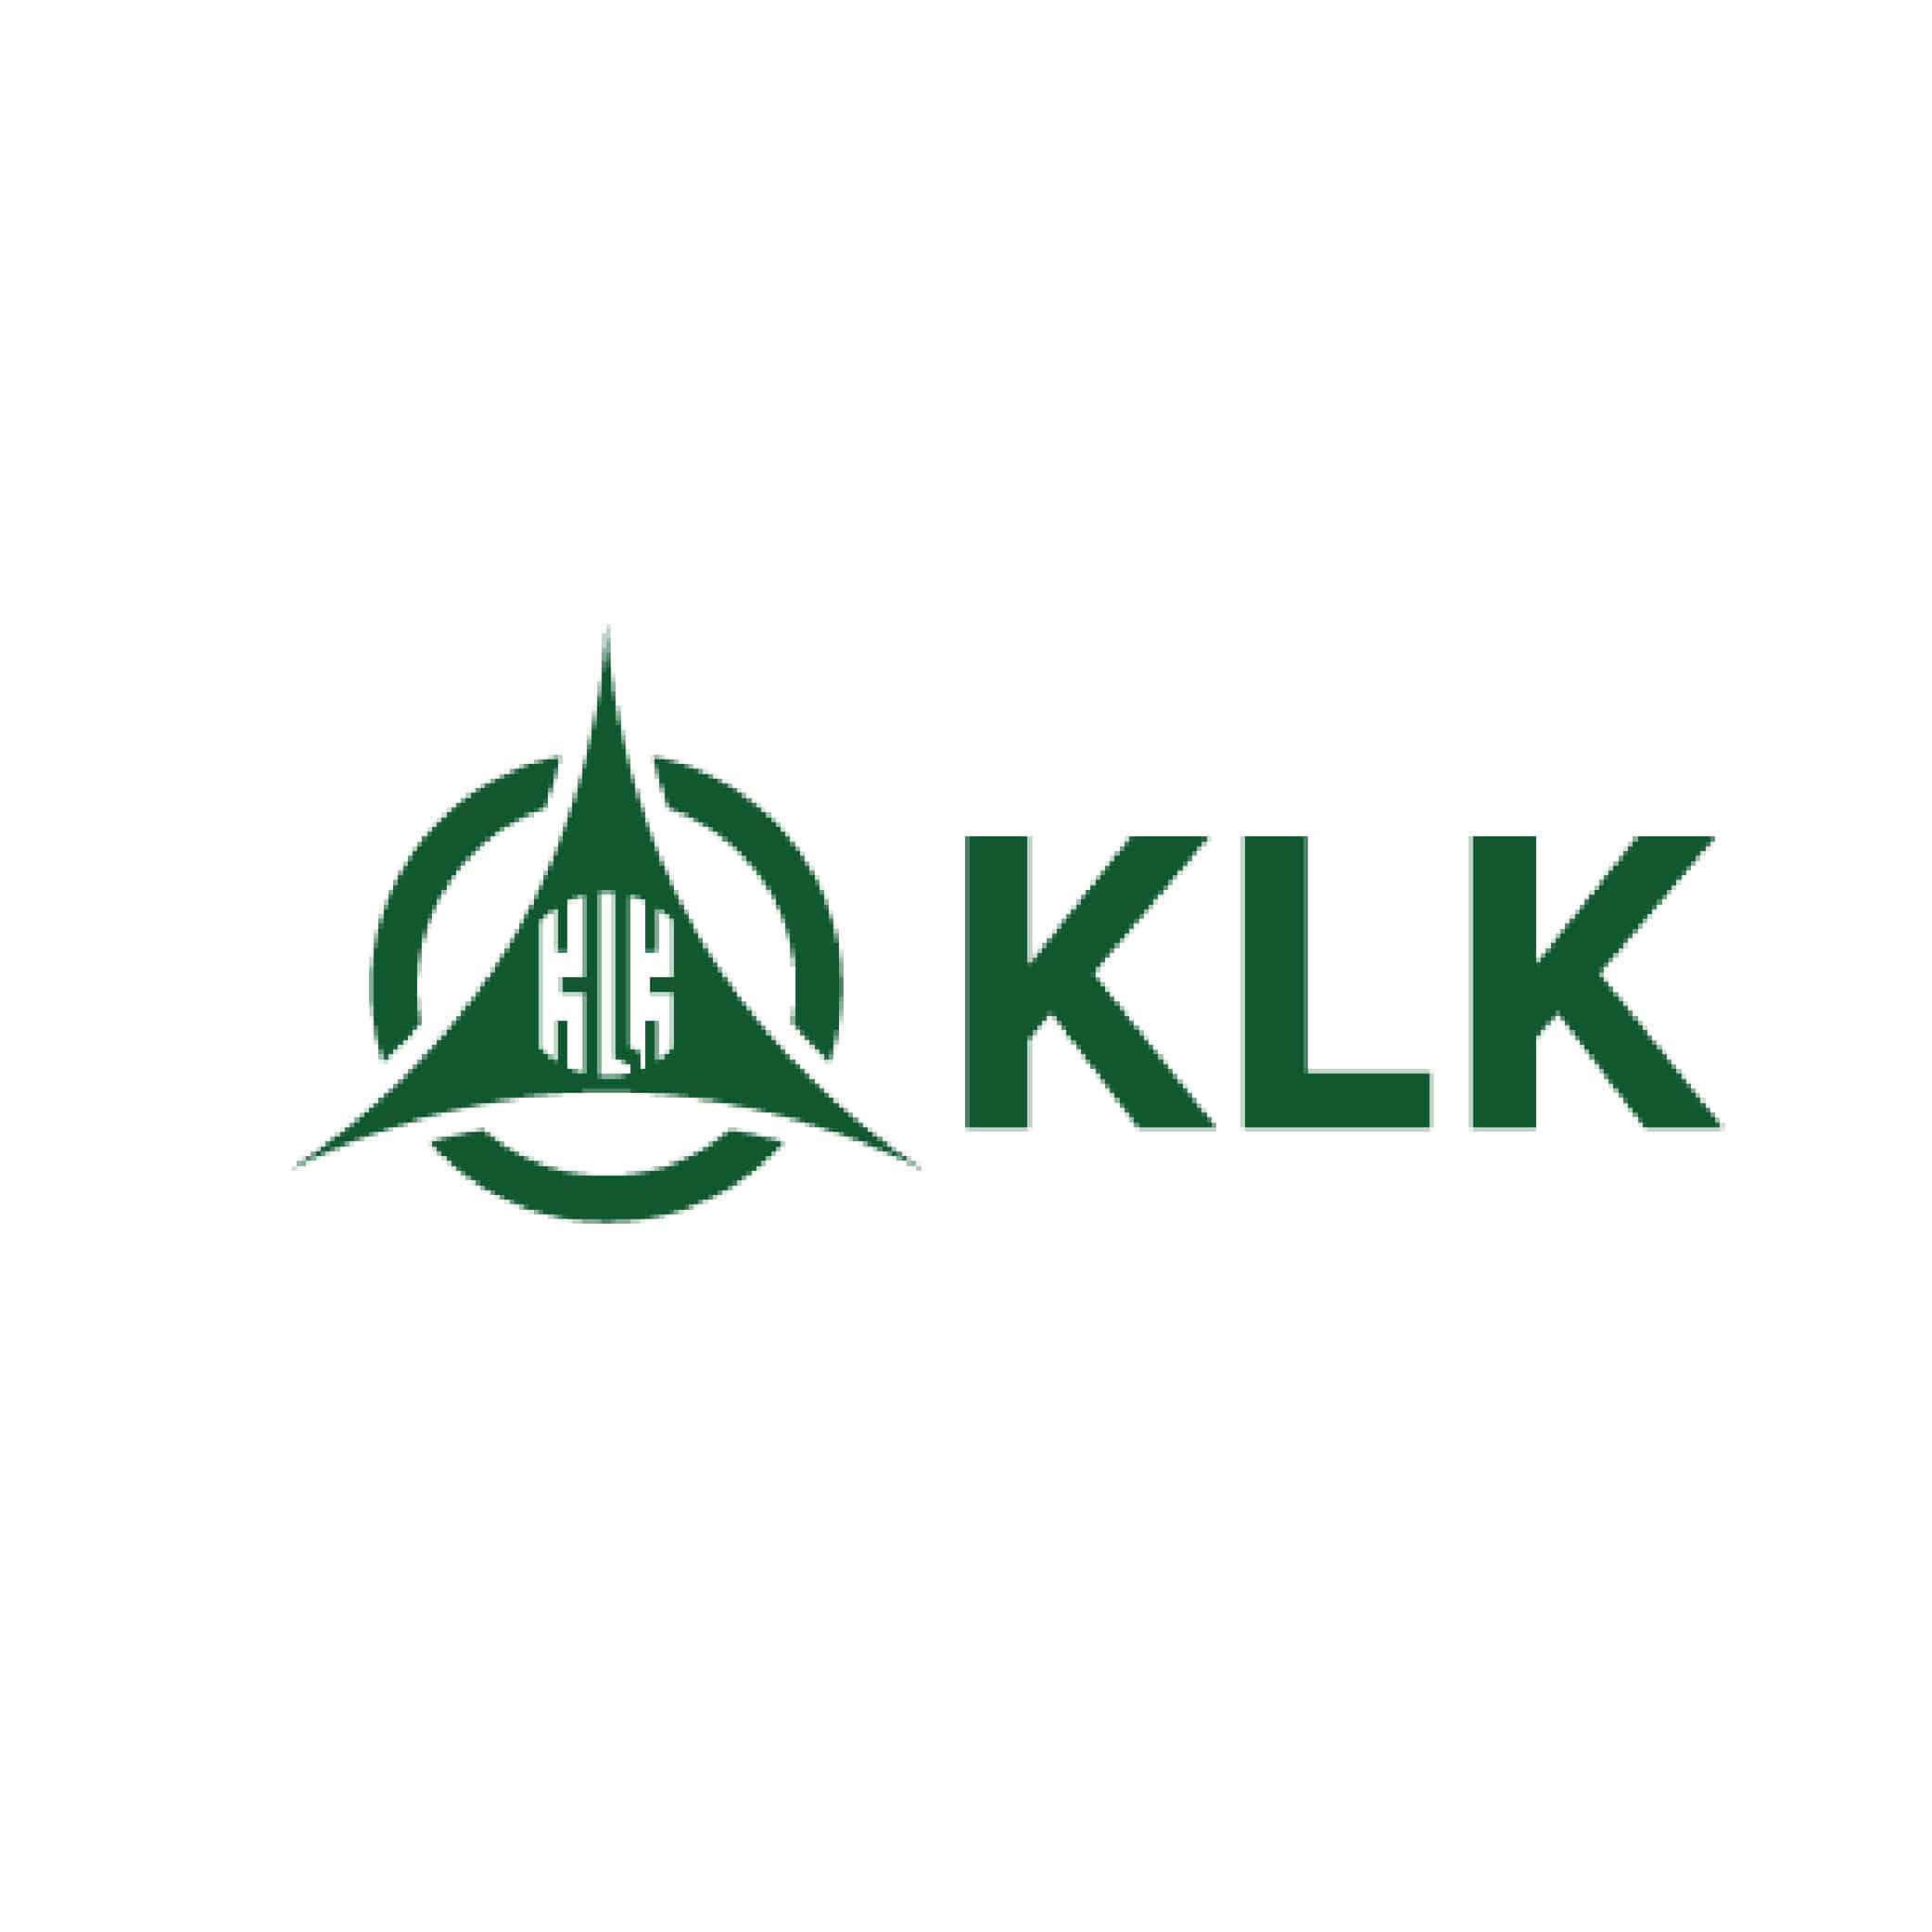 KLK logo